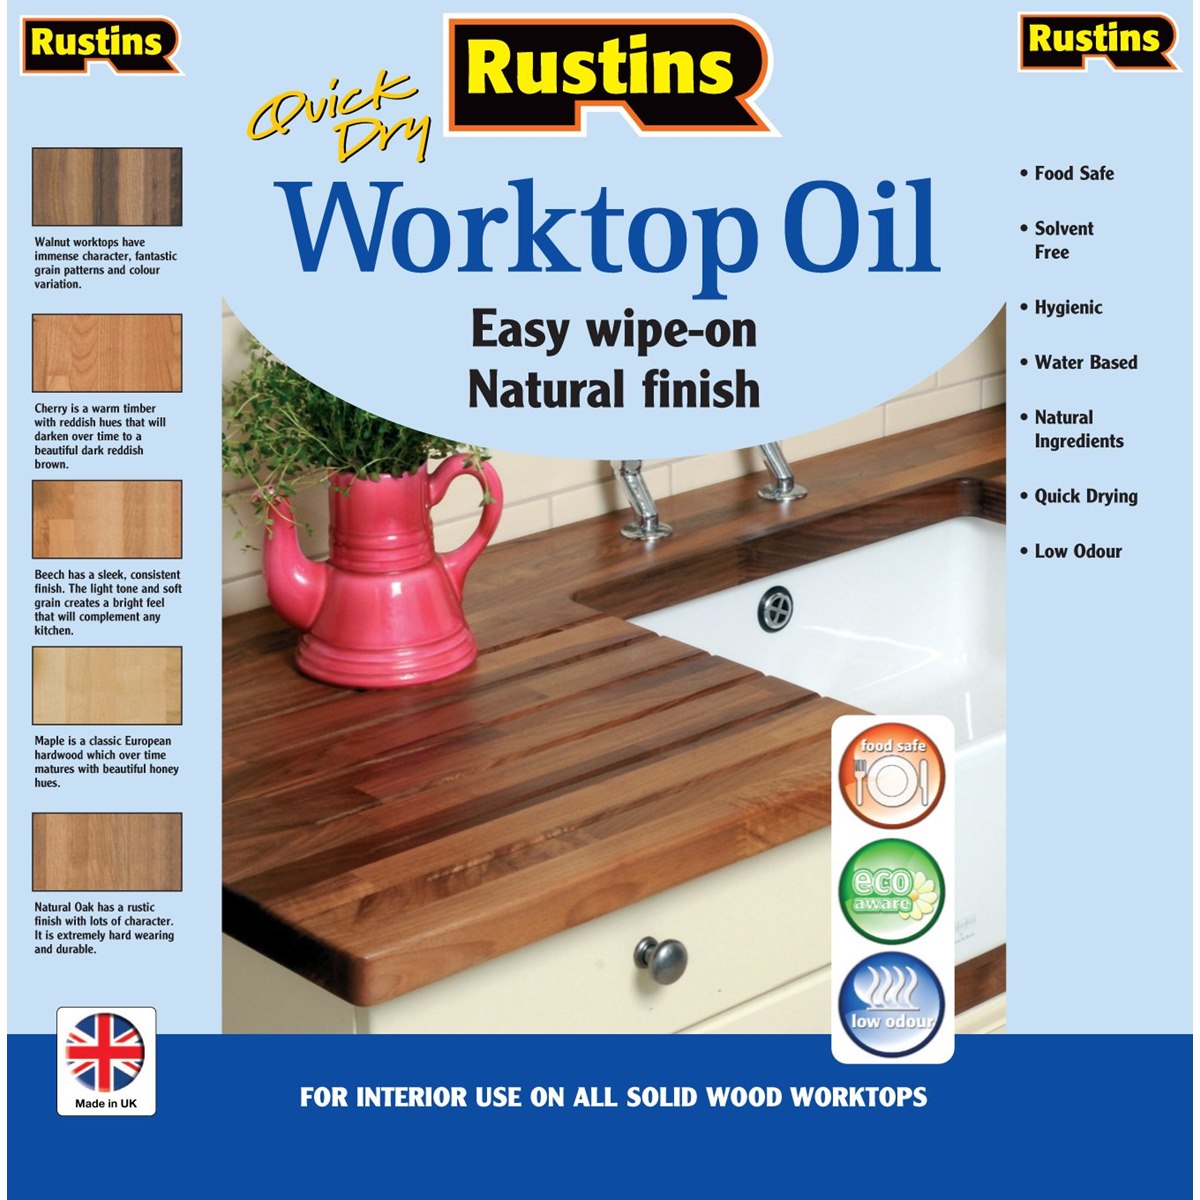 Where to Buy Rustins Worktop Oil